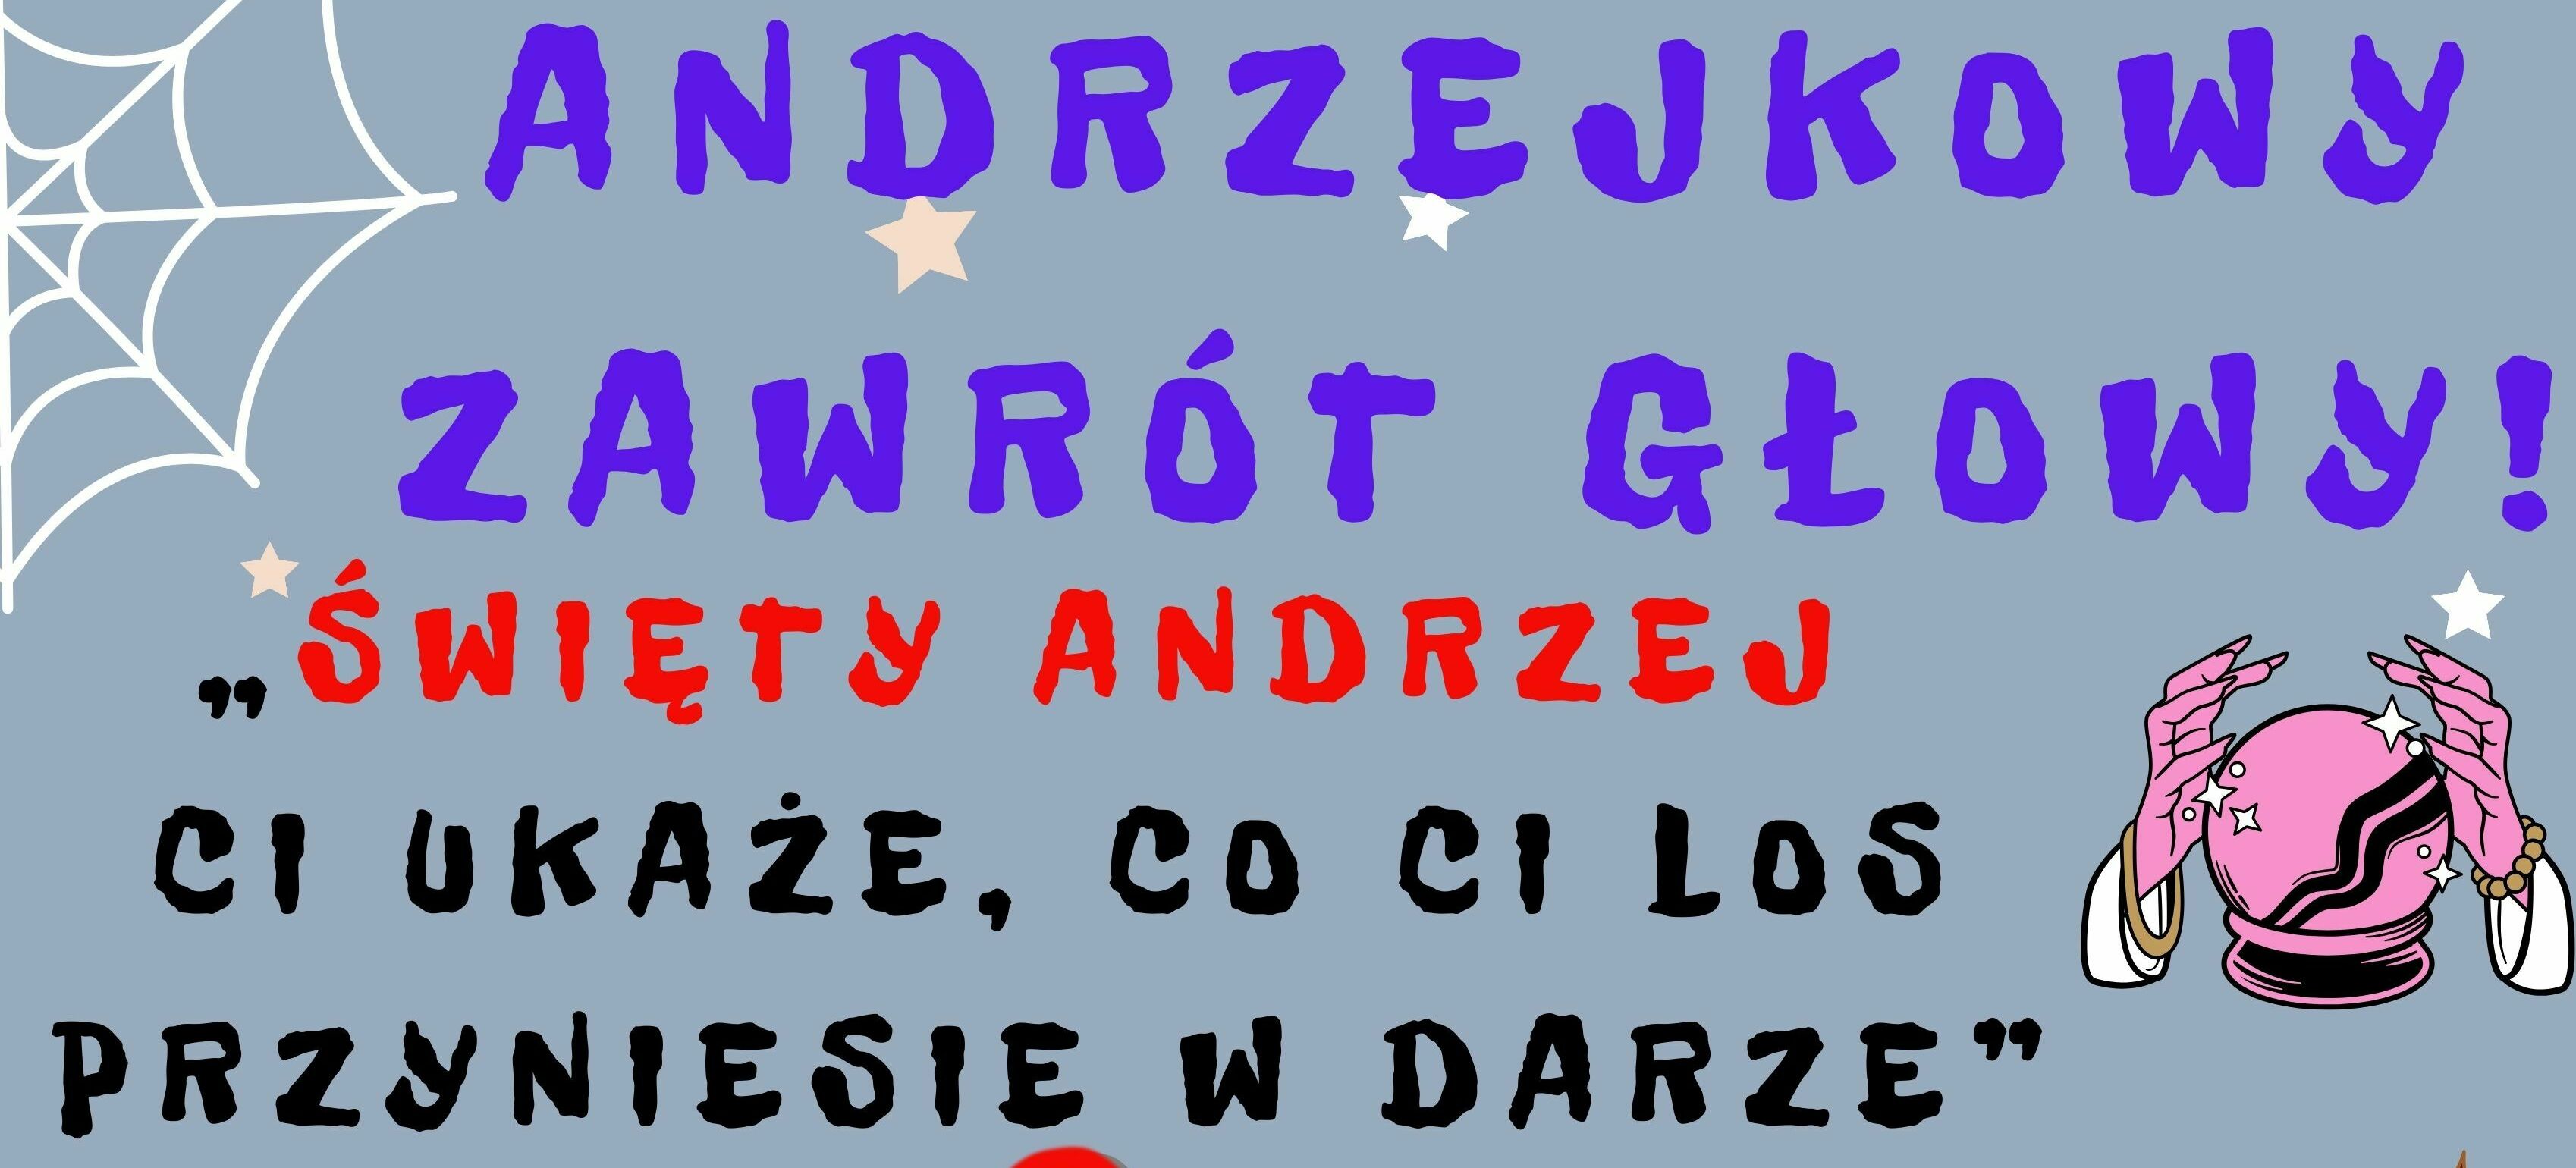 Grafika z napisami "Andrzejki Zawrót Głowy" i "Święty Andrzej Ci ukaże, co Ci los przyniesie w darze" z grafiką różowego raka, pajęczyny w tle.